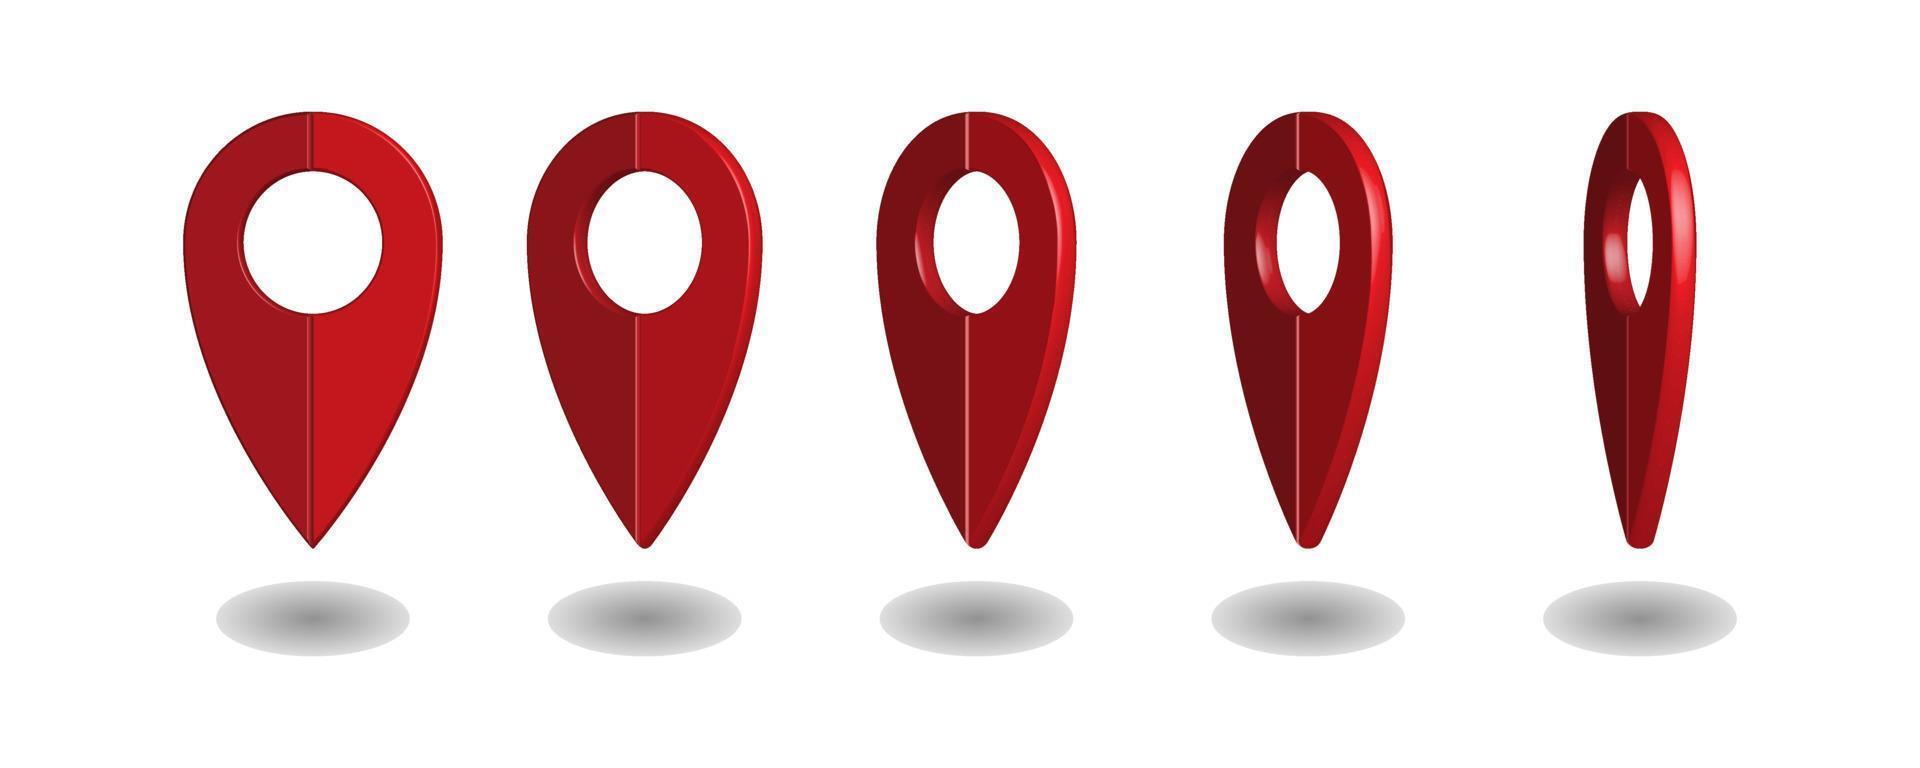 pinos de mapa 3d. formas vetoriais de ponto de localização em branco para mapas e aplicativos de navegação, marcadores de geolocalização vermelhos, ícones de marcadores de lugar, símbolos de mapeamento e interesses de viajantes vetor